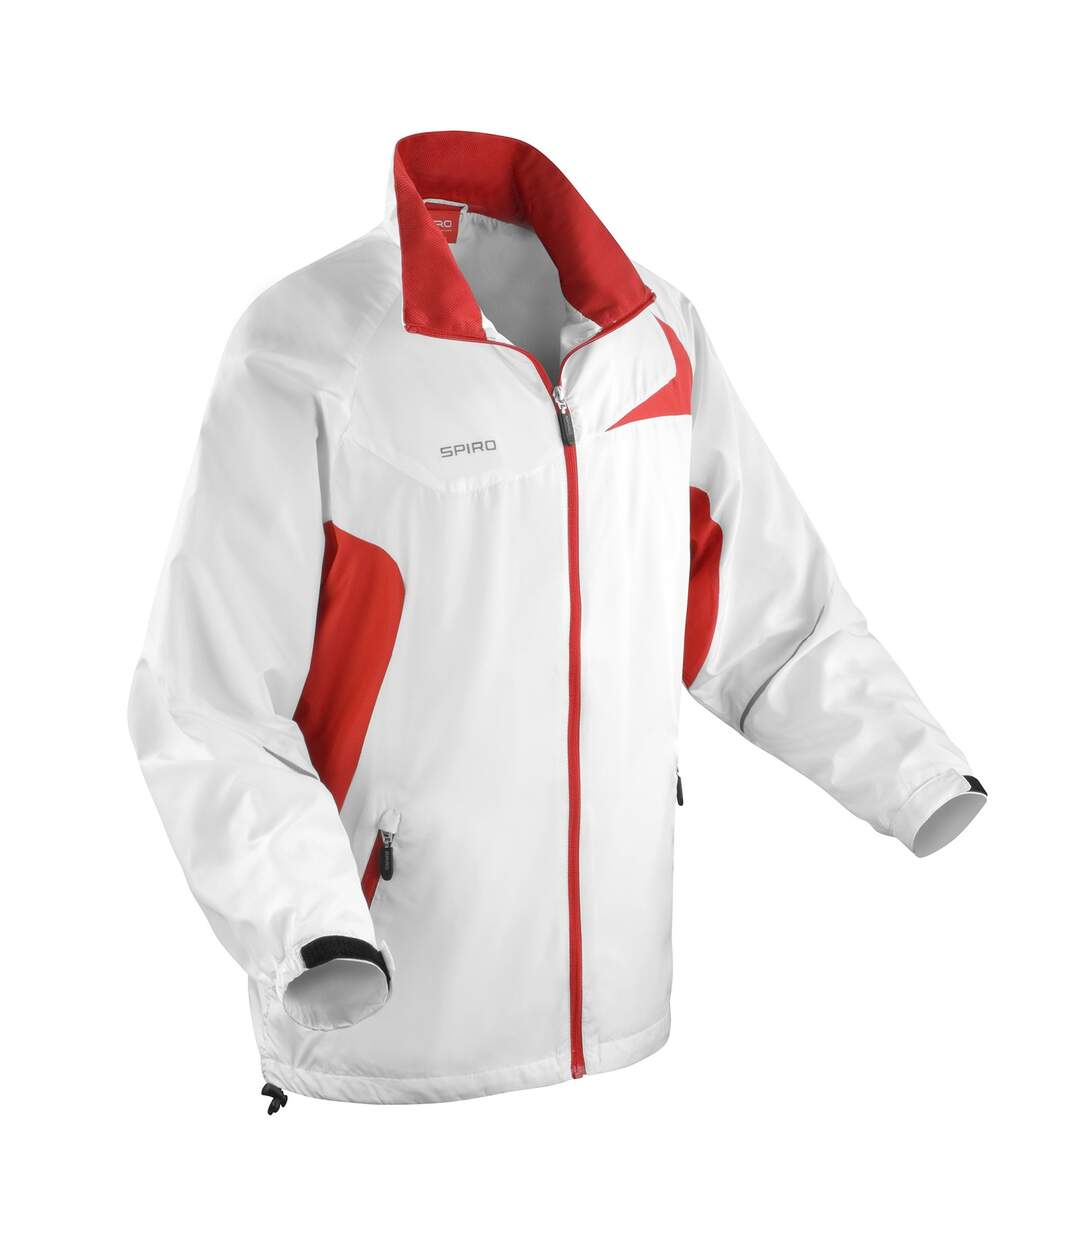 Spiro - Veste de sport légère hydrofuge - Homme (Blanc/Rouge) - UTRW1474